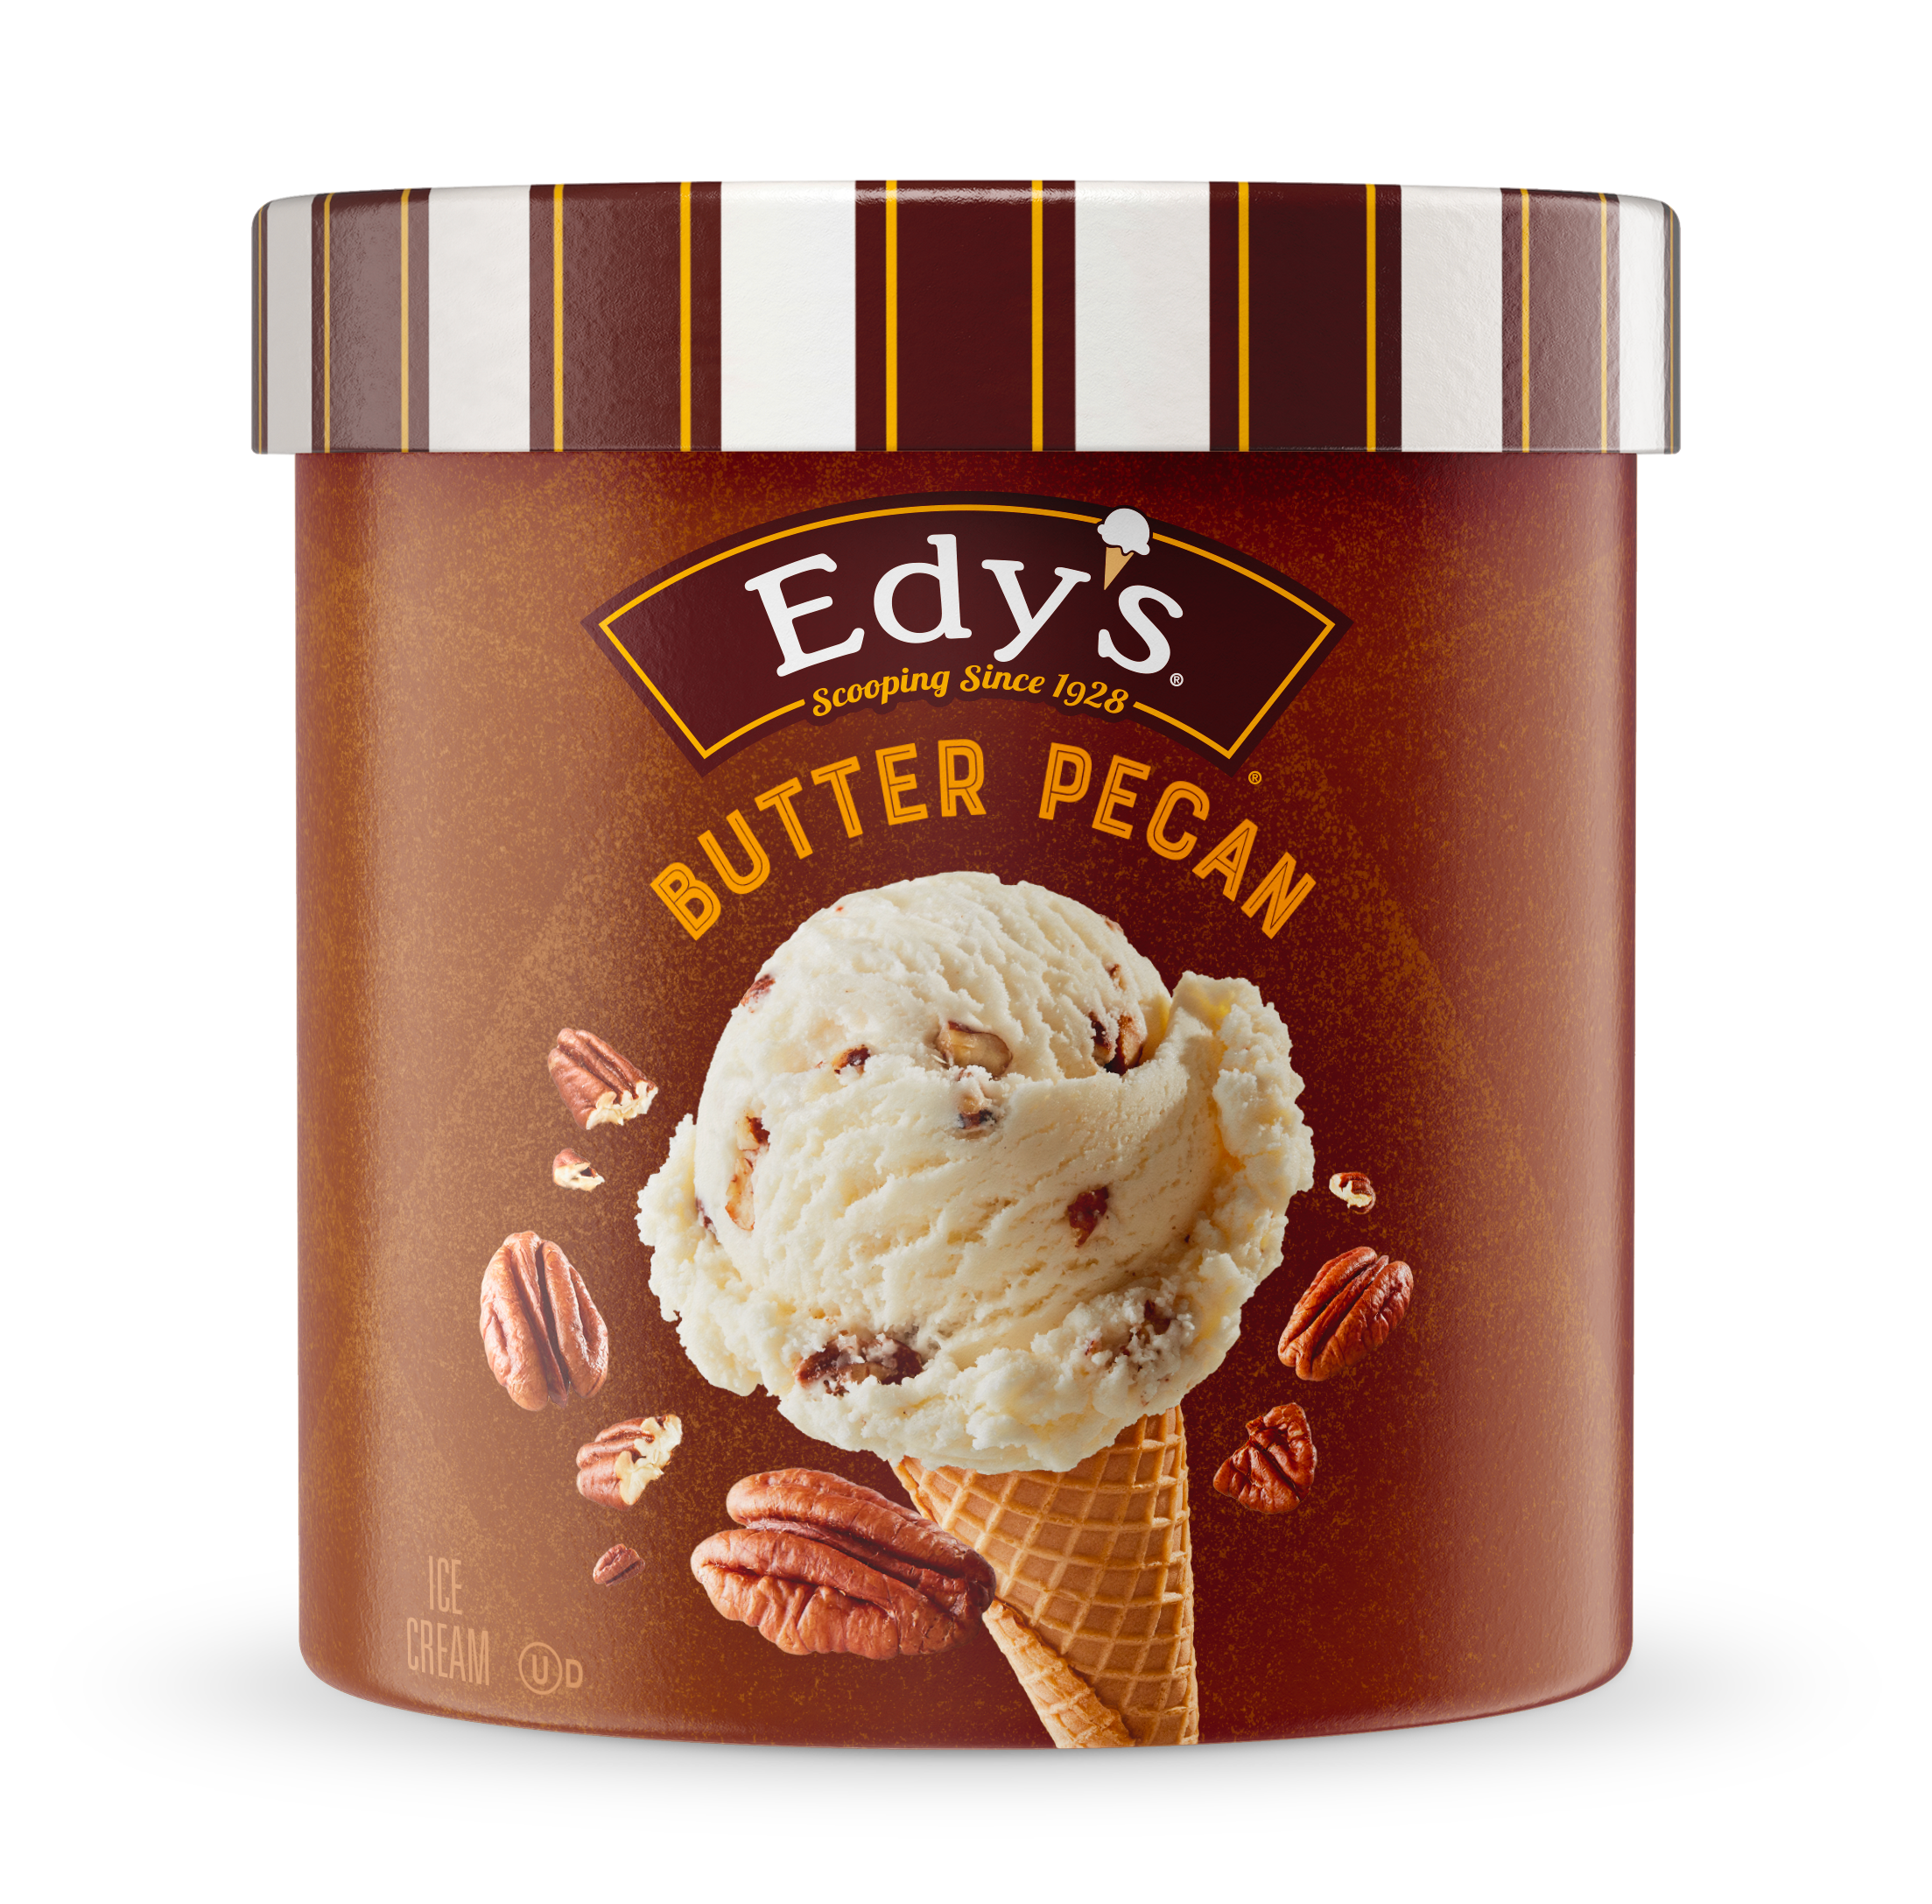 Carton of Edy's butter pecan ice cream